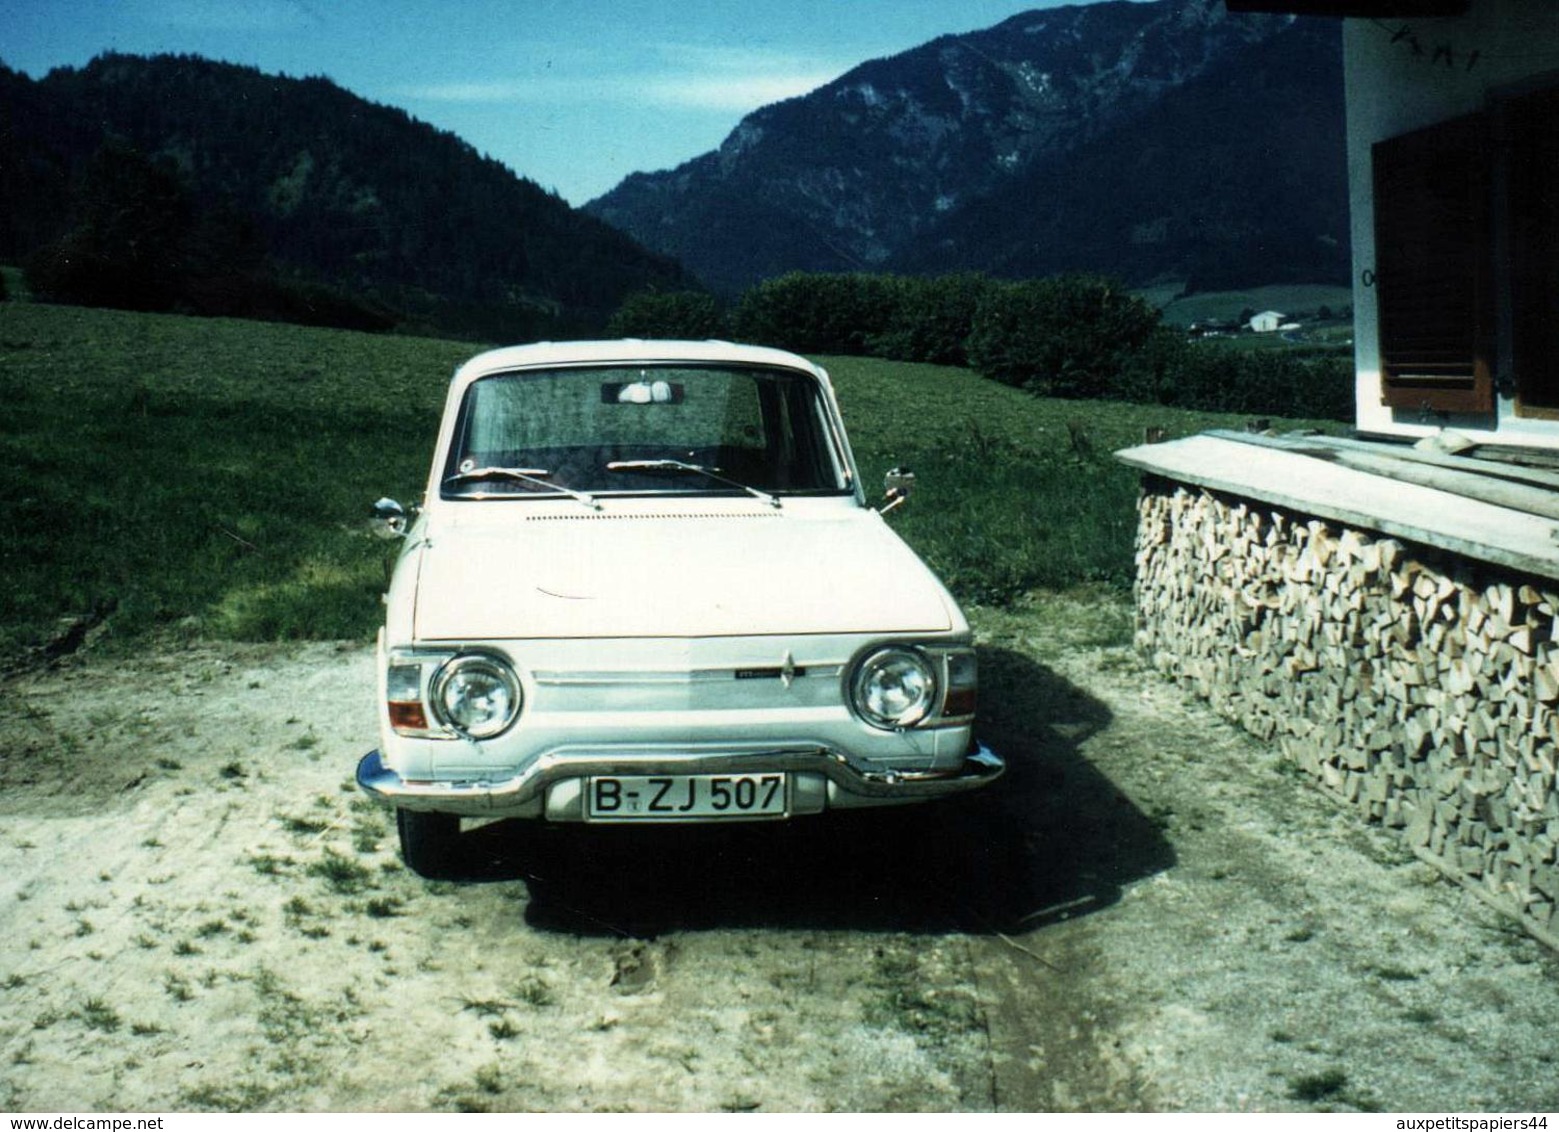 Photo Couleur Originale Renault 10 Major Blanche (1965-1971) - Automobile